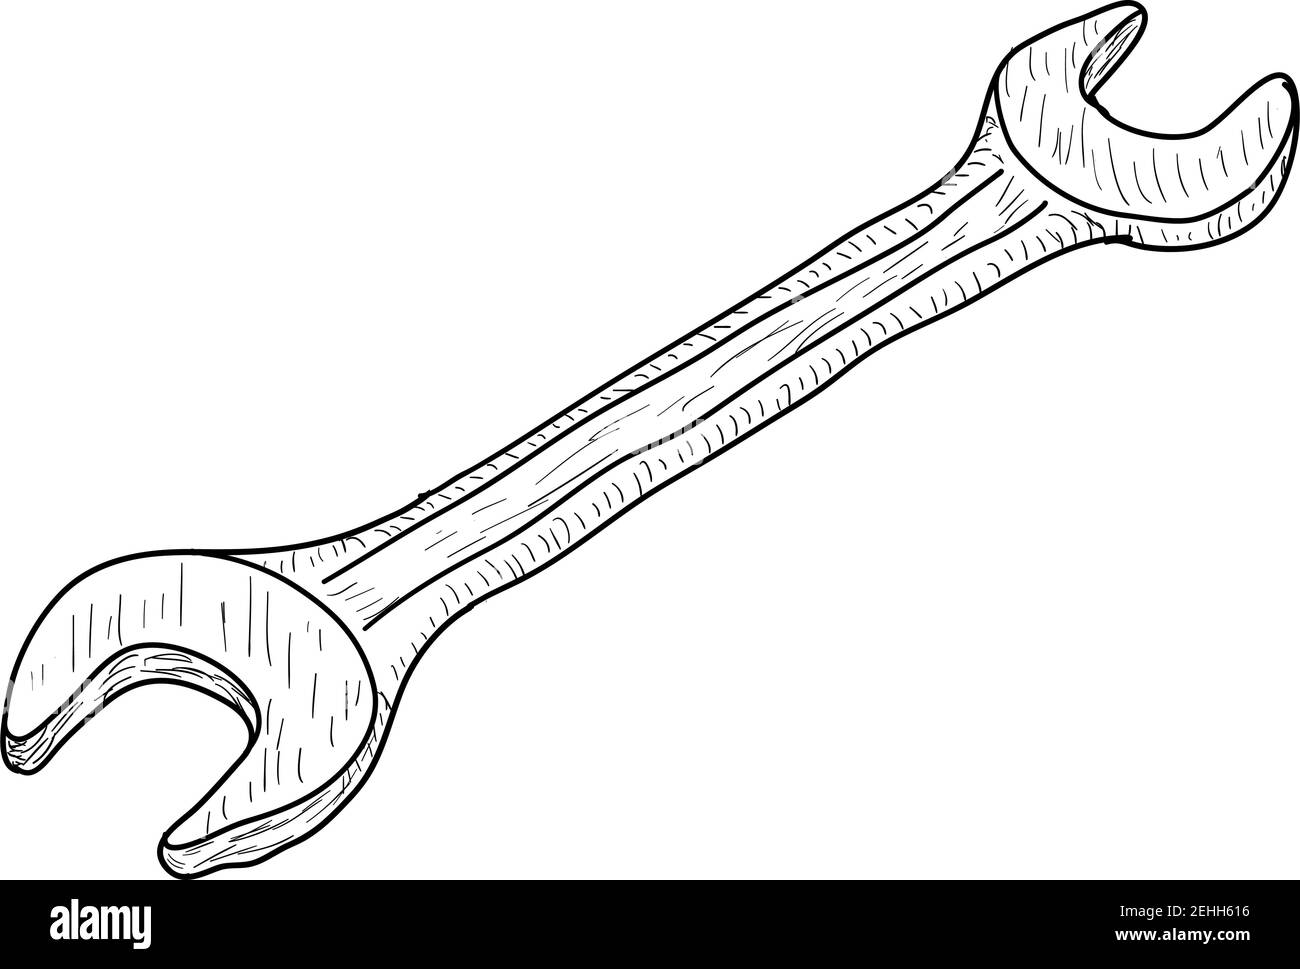 Skizze Silhouette Hand Werkzeug Gabelschlüssel auf weißem Hintergrund  Stock-Vektorgrafik - Alamy